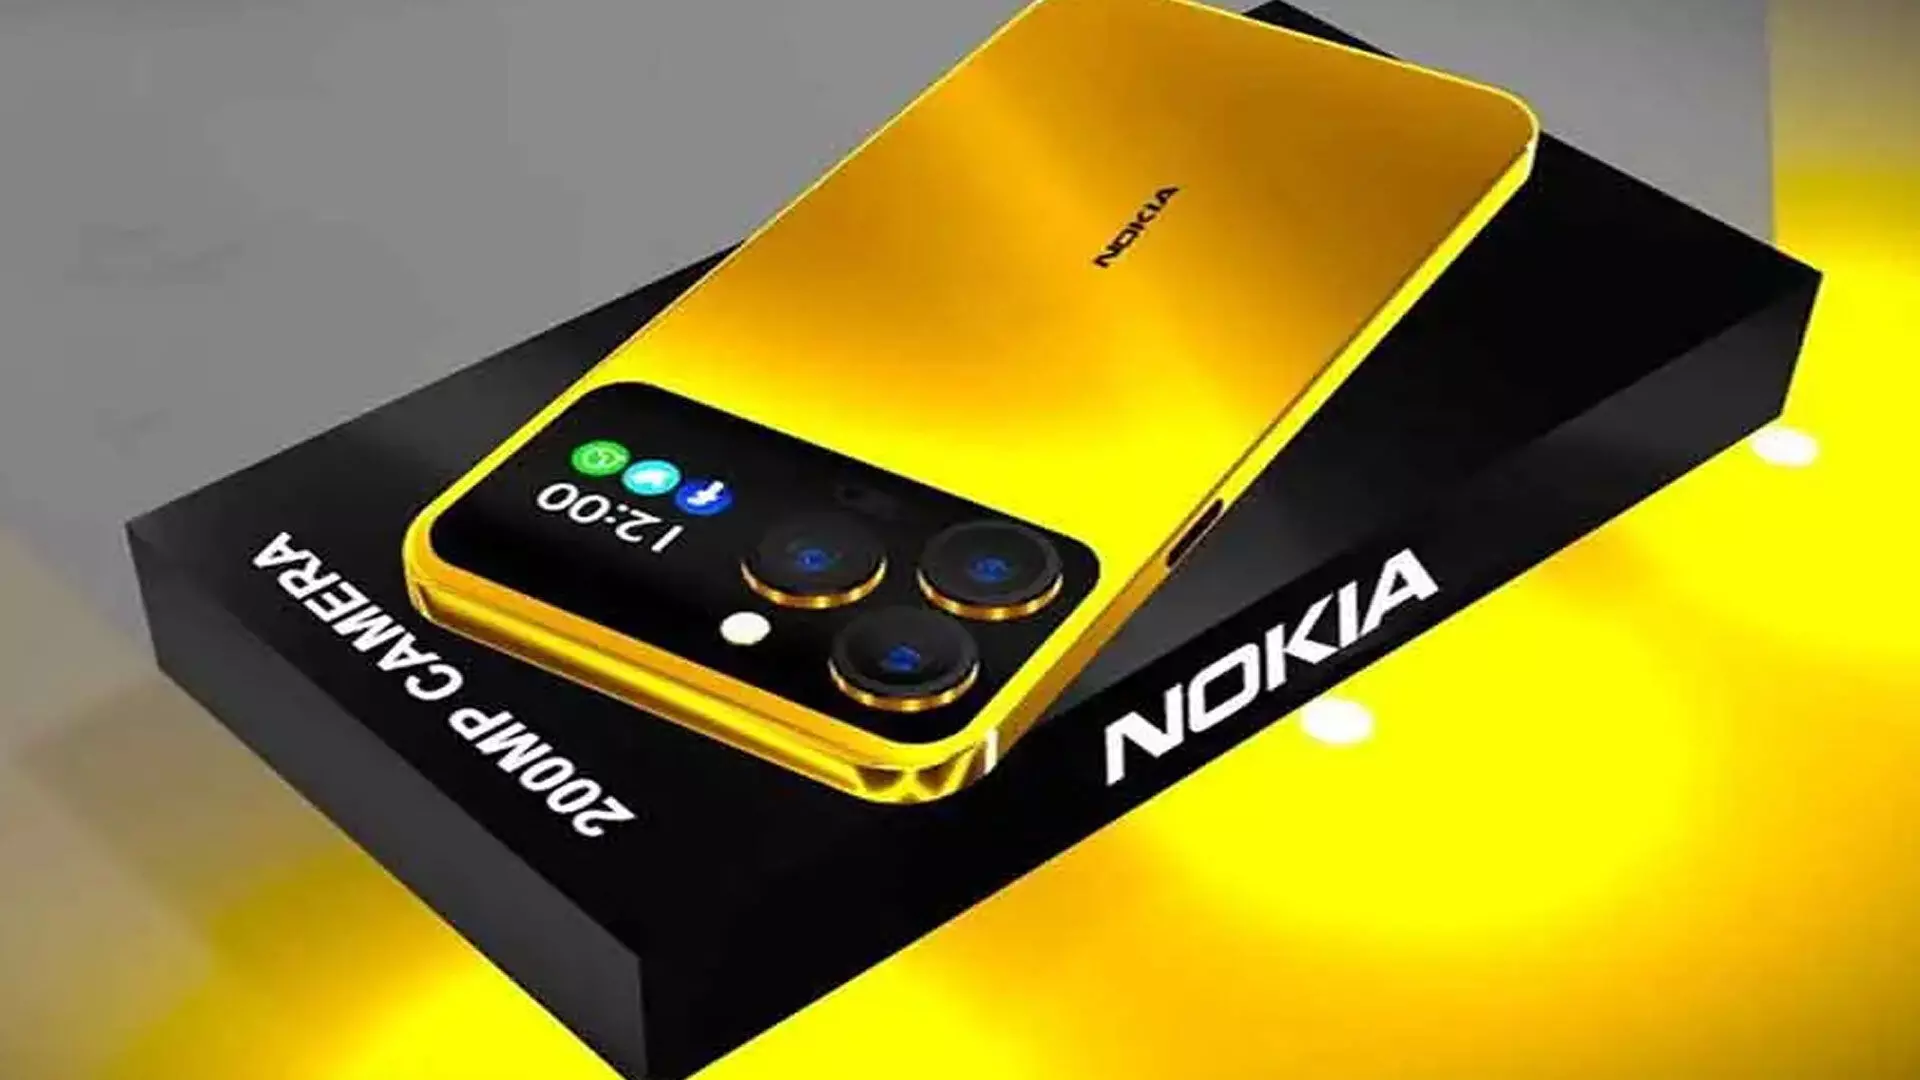 Nokia 1100:  इसमें मिल रही 6200mAh बैटरी बैकअप, जानिए फीचर्स